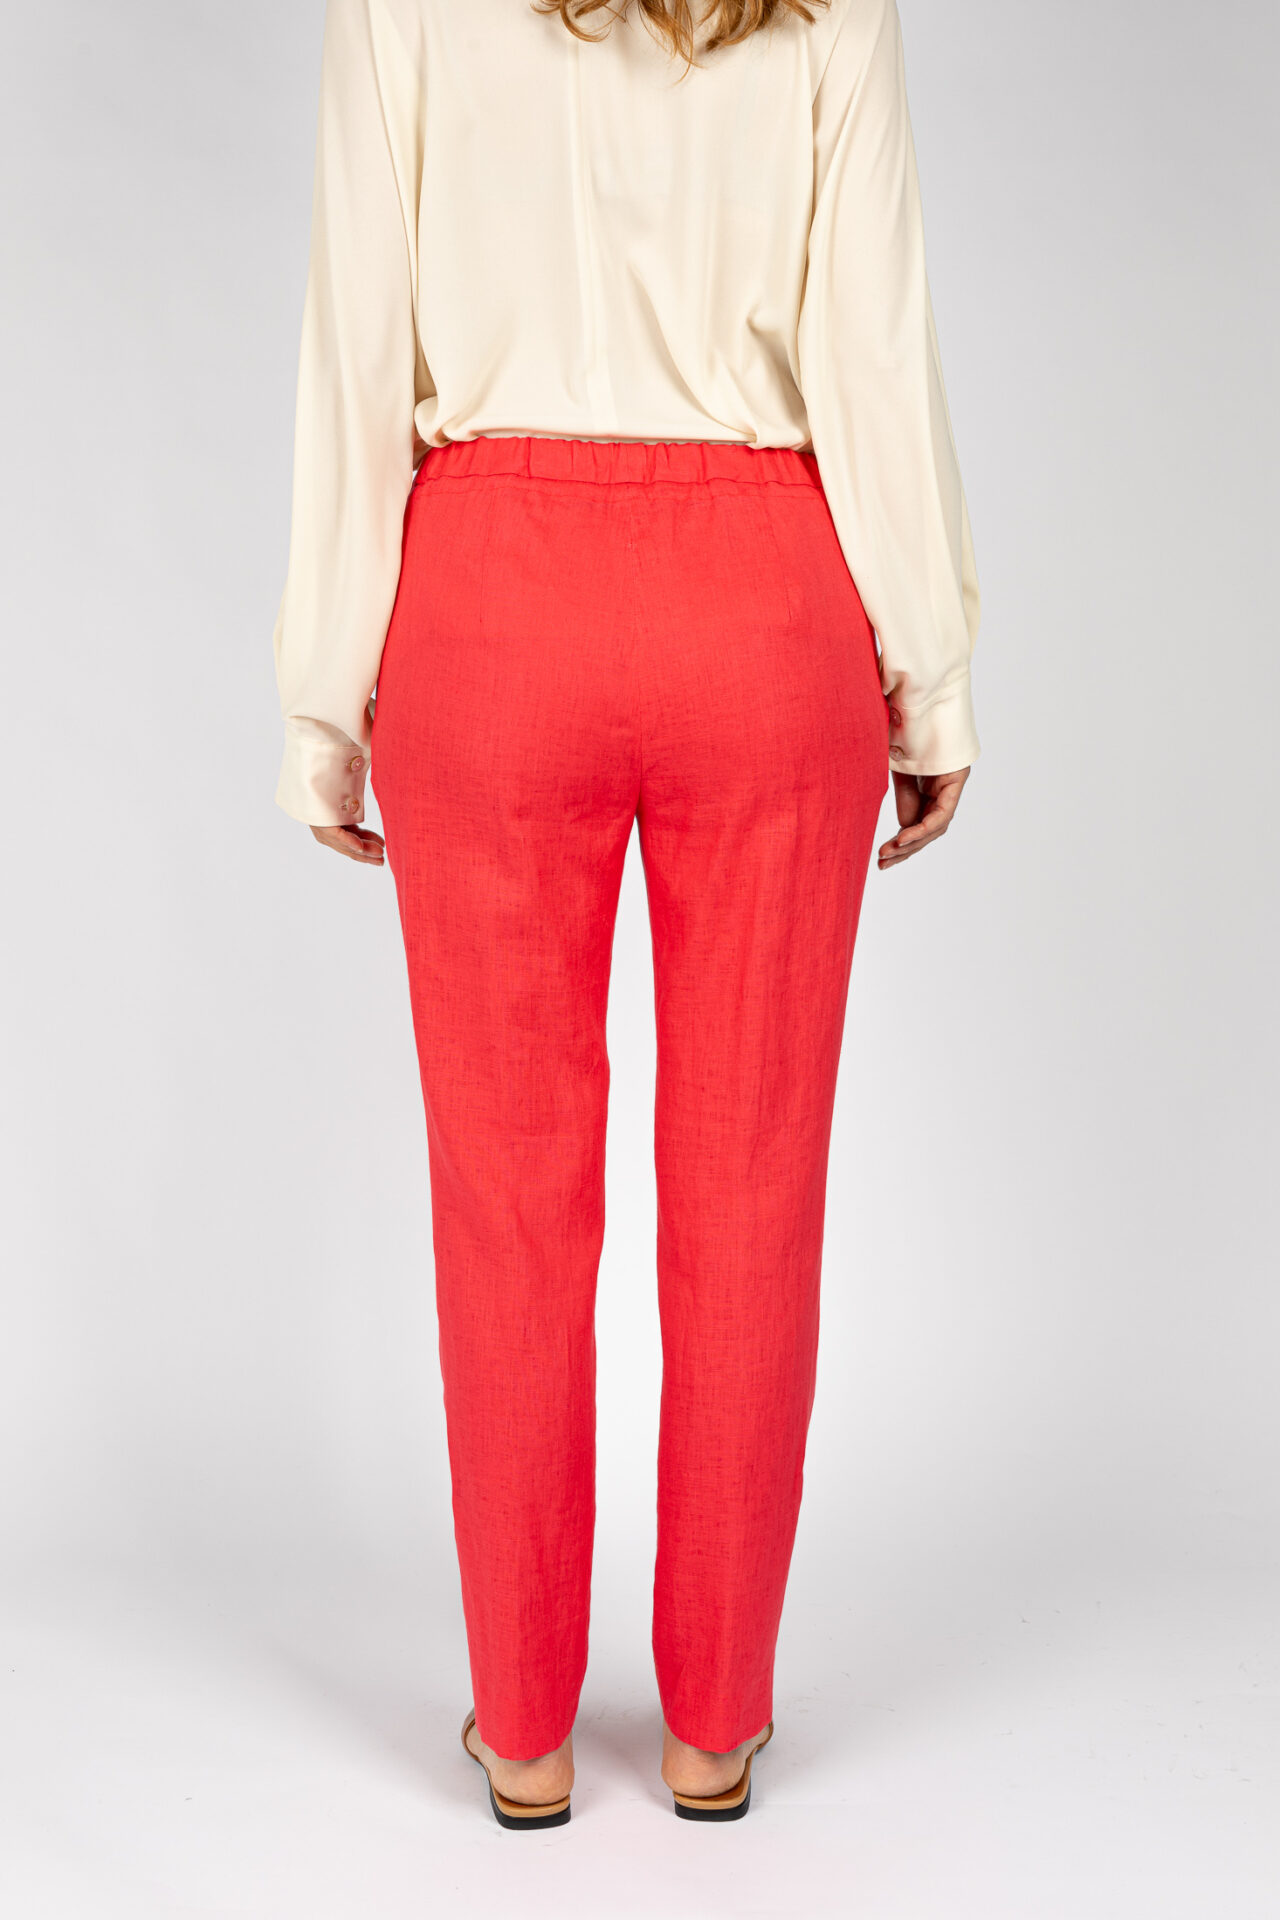 Pantaloni linea morbida, da donna in colore corallo P19667R - 4